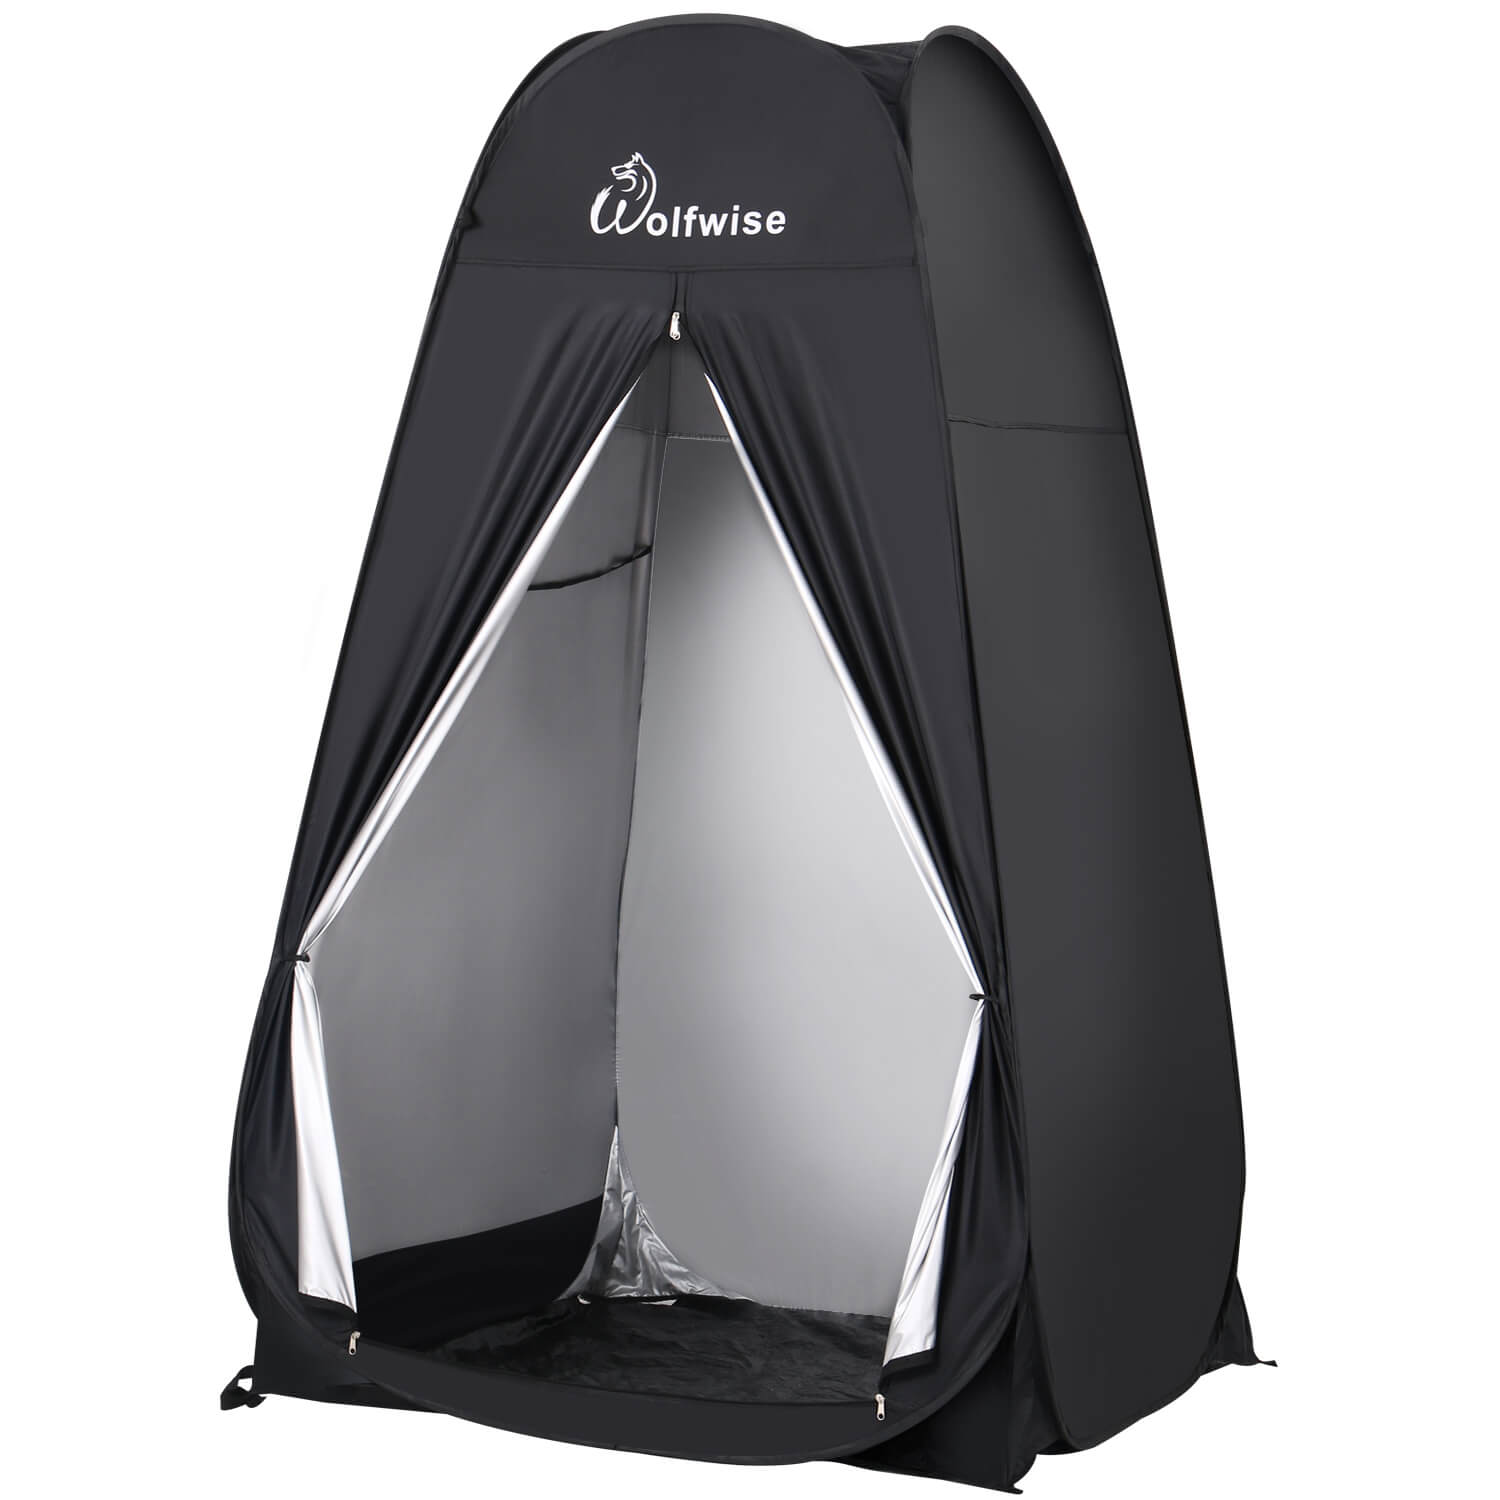 Sandalen Krijt Ambitieus WolfWise Pop up Shower Tent, Pop up Privacy Tent, Portable Shower Tent